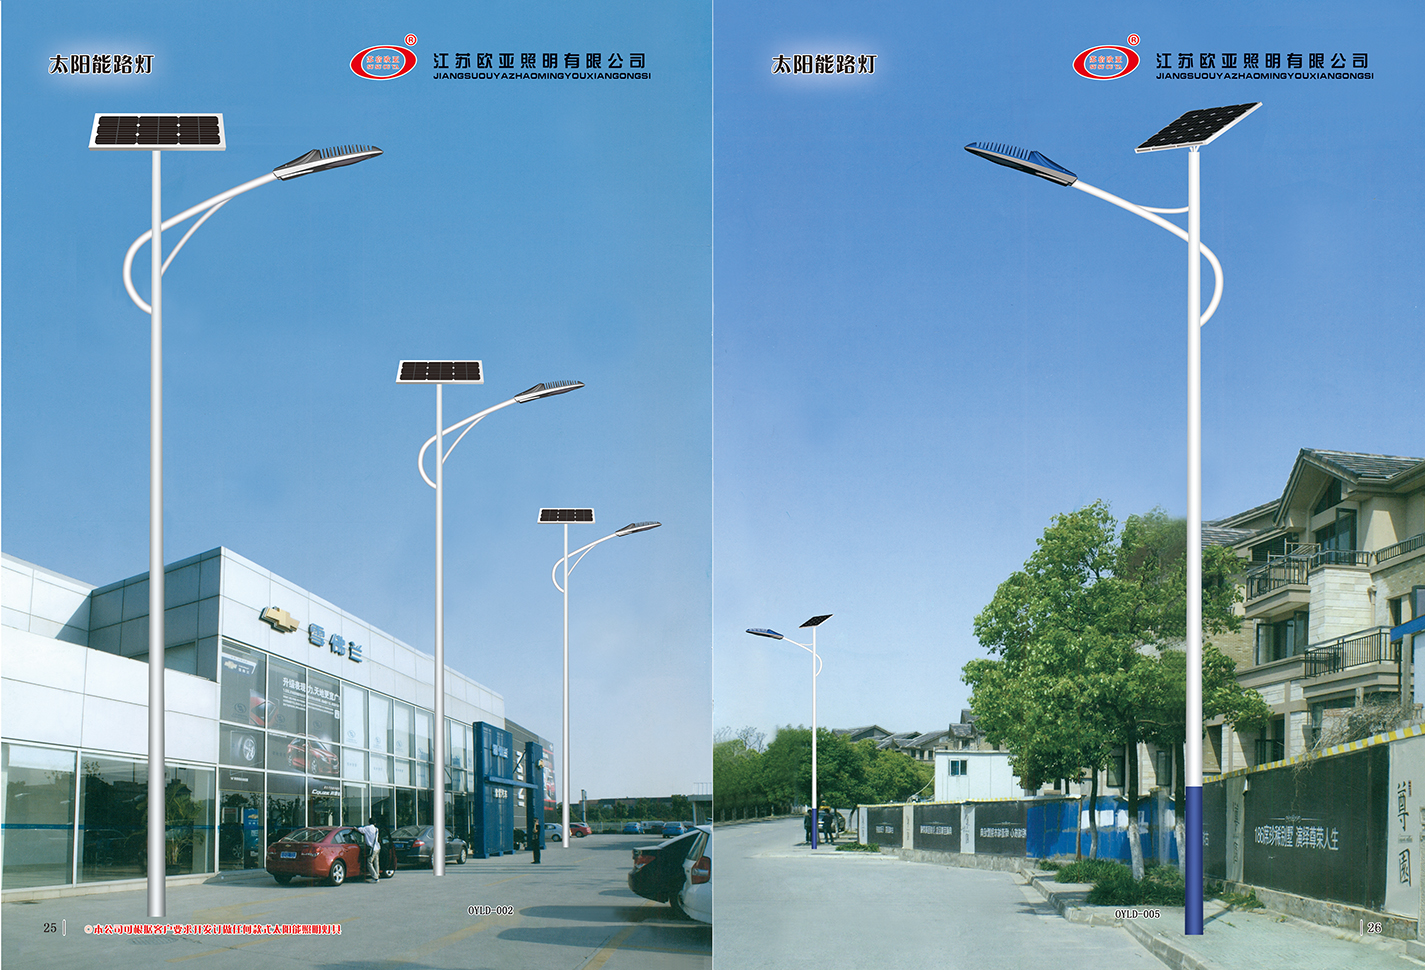 江苏欧亚照明股份有限公司 太阳能路灯系列产品展示